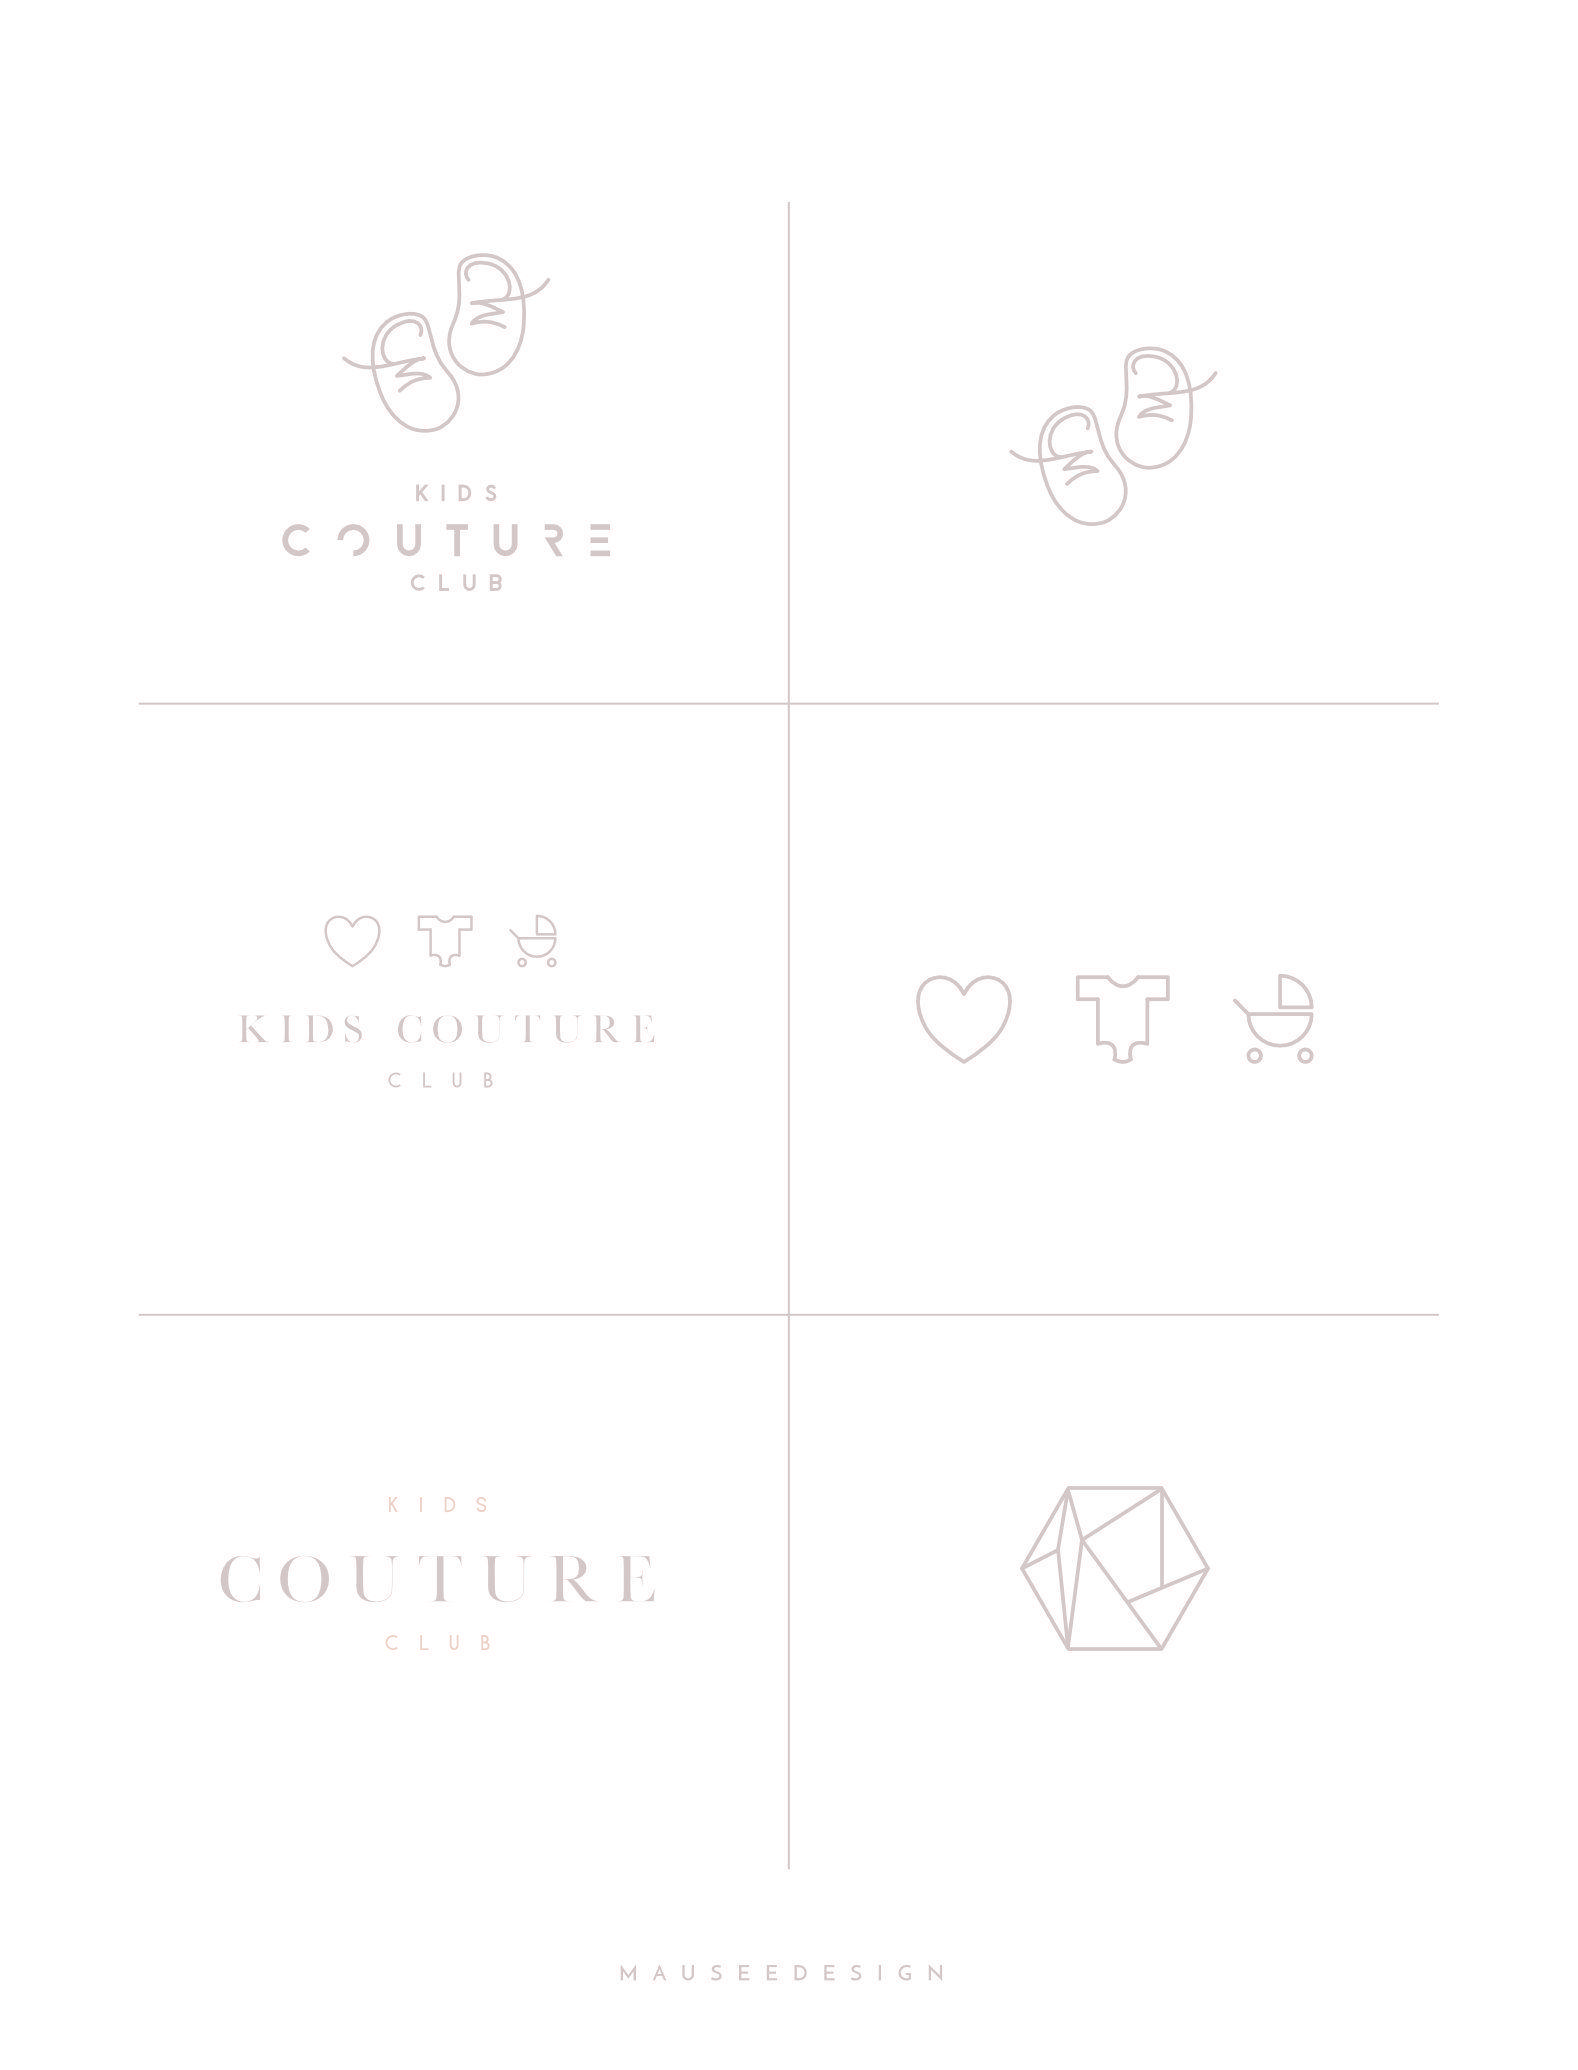 Couture Club Logo - Kids Couture Club Logo Design Exploration | Design::Branding::Logo ...